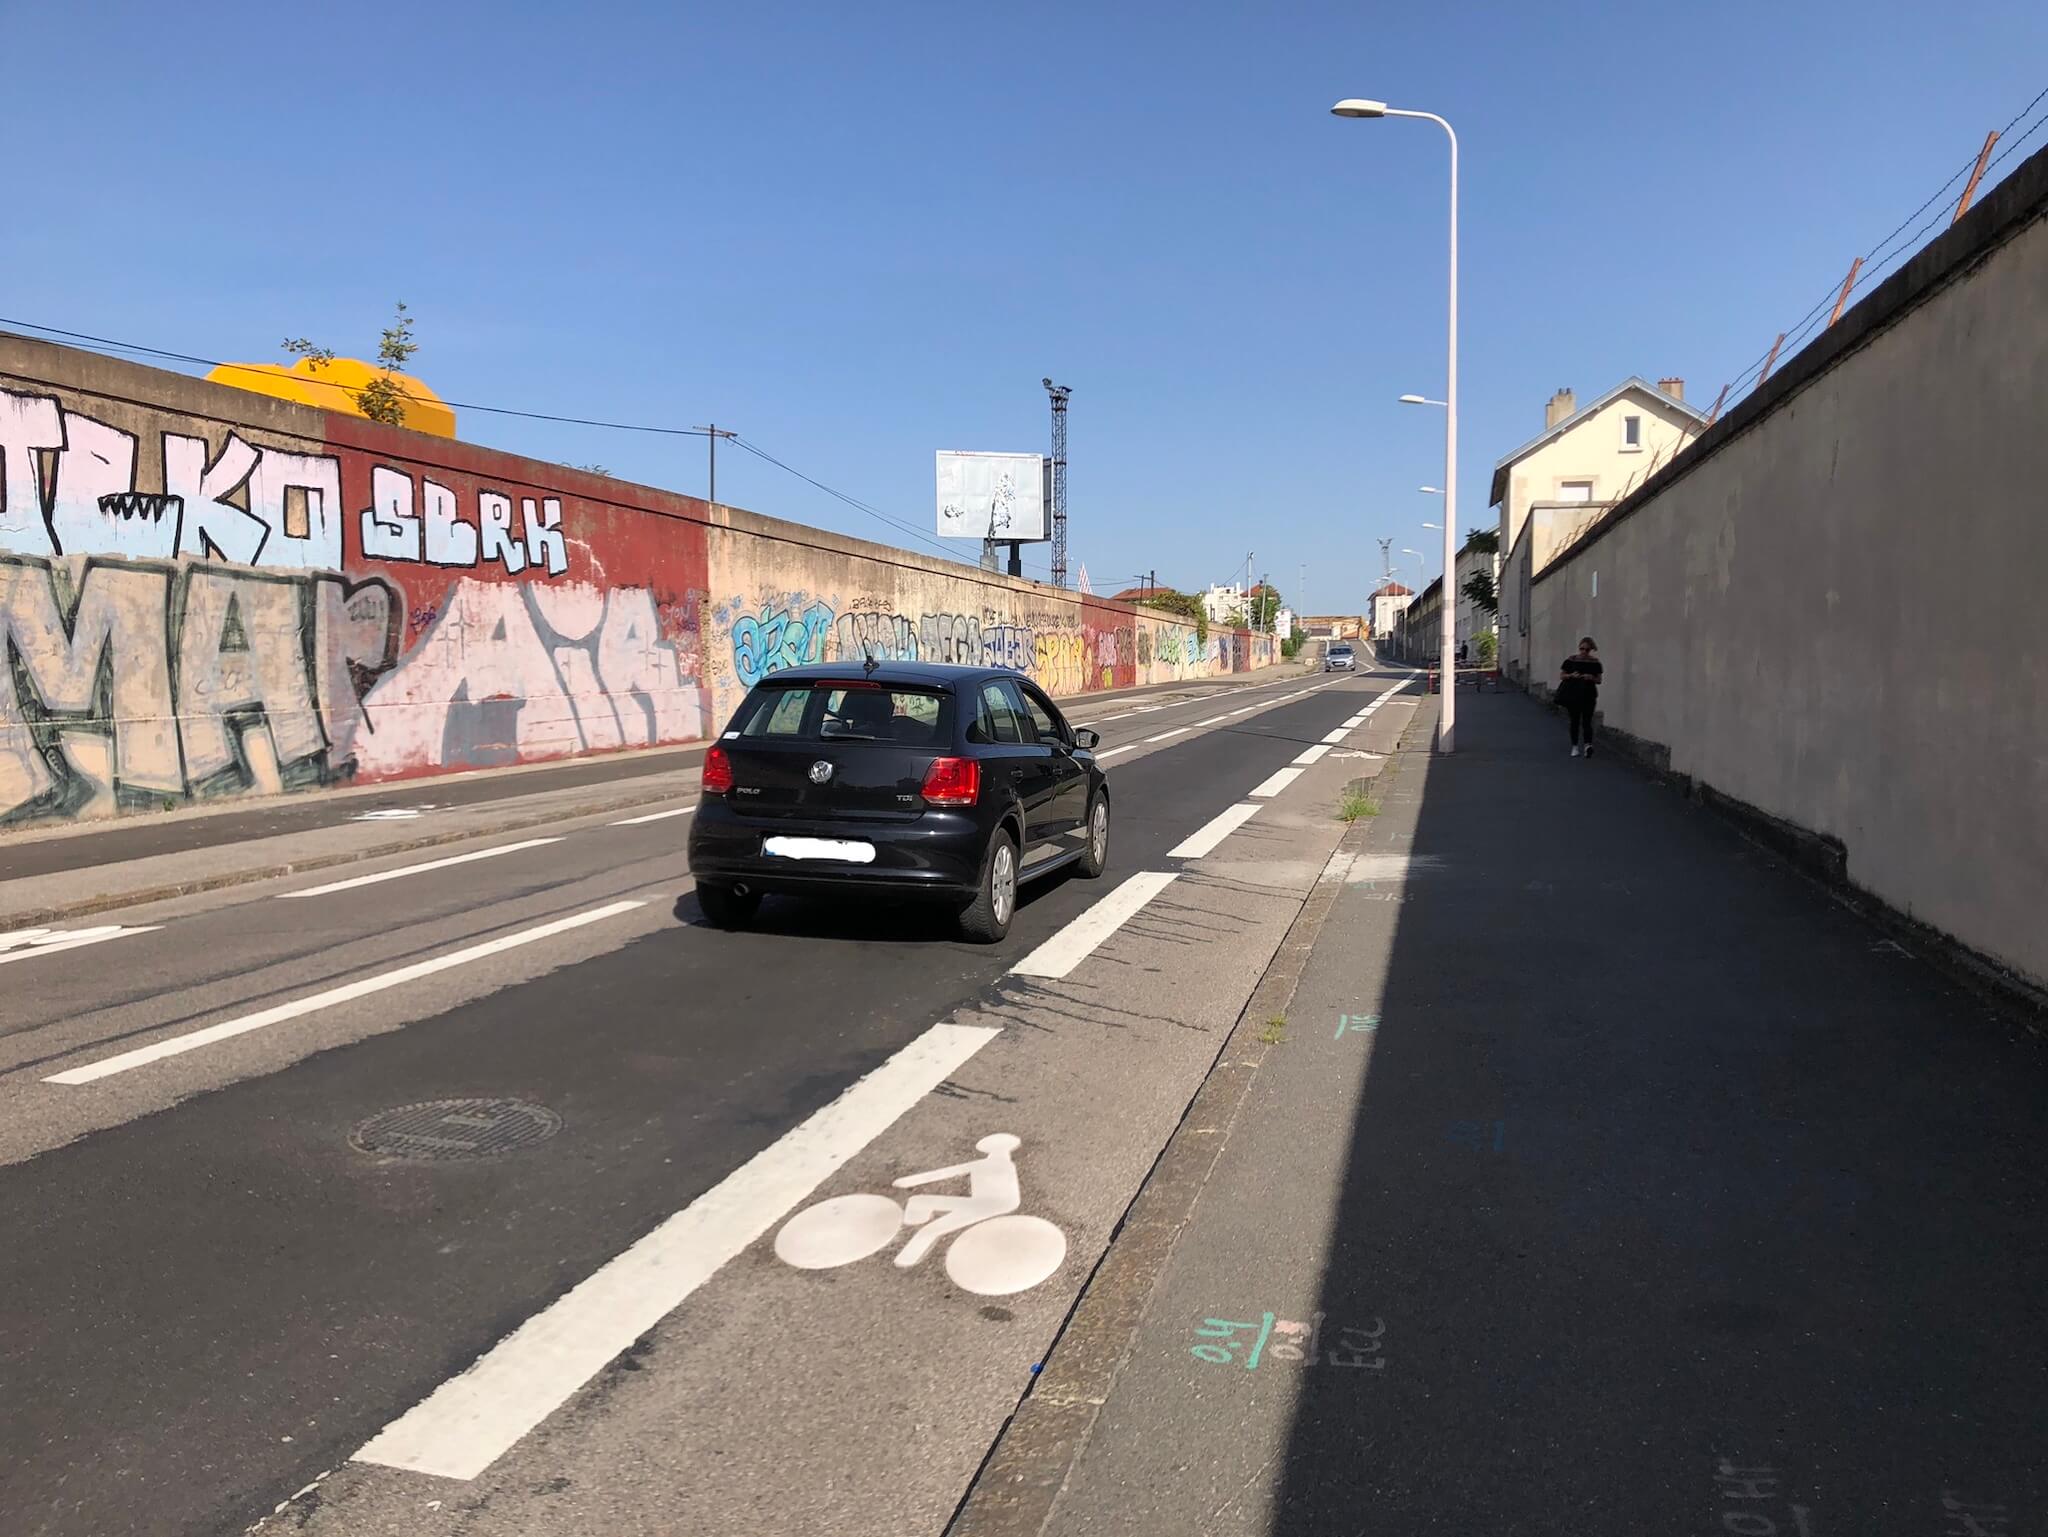 La rue Croix-barret à Lyon est limitée à 30 km/h mais les vitesses y sont encore bien plus élevées. ©MA/Rue89Lyon